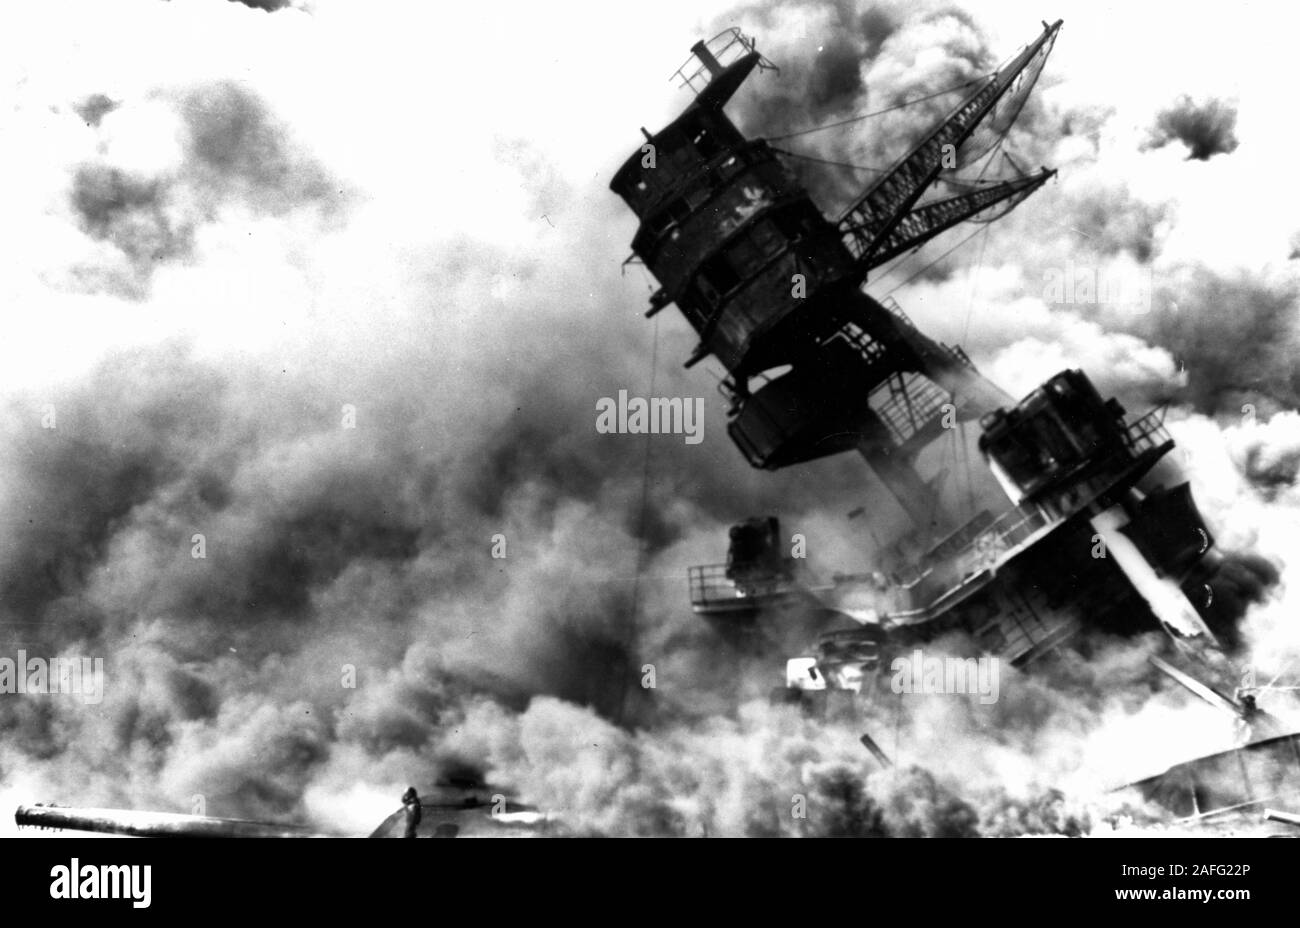 Pearl Harbor Angriff, vom 7. Dezember 1941 - Die vorwärts Überbau und Nummer Zwei 14/45 triple Geschützturm des versunkenen USS Arizona (BB-39), in Flammen nach der Japanischen raid, 7. Dezember 1941. Der Fockmast lehnt sich infolge des Zusammenbruchs der Rumpf Struktur unter dem vorderen Bein, nach der Explosion der Magazine des Schiffes. Stockfoto